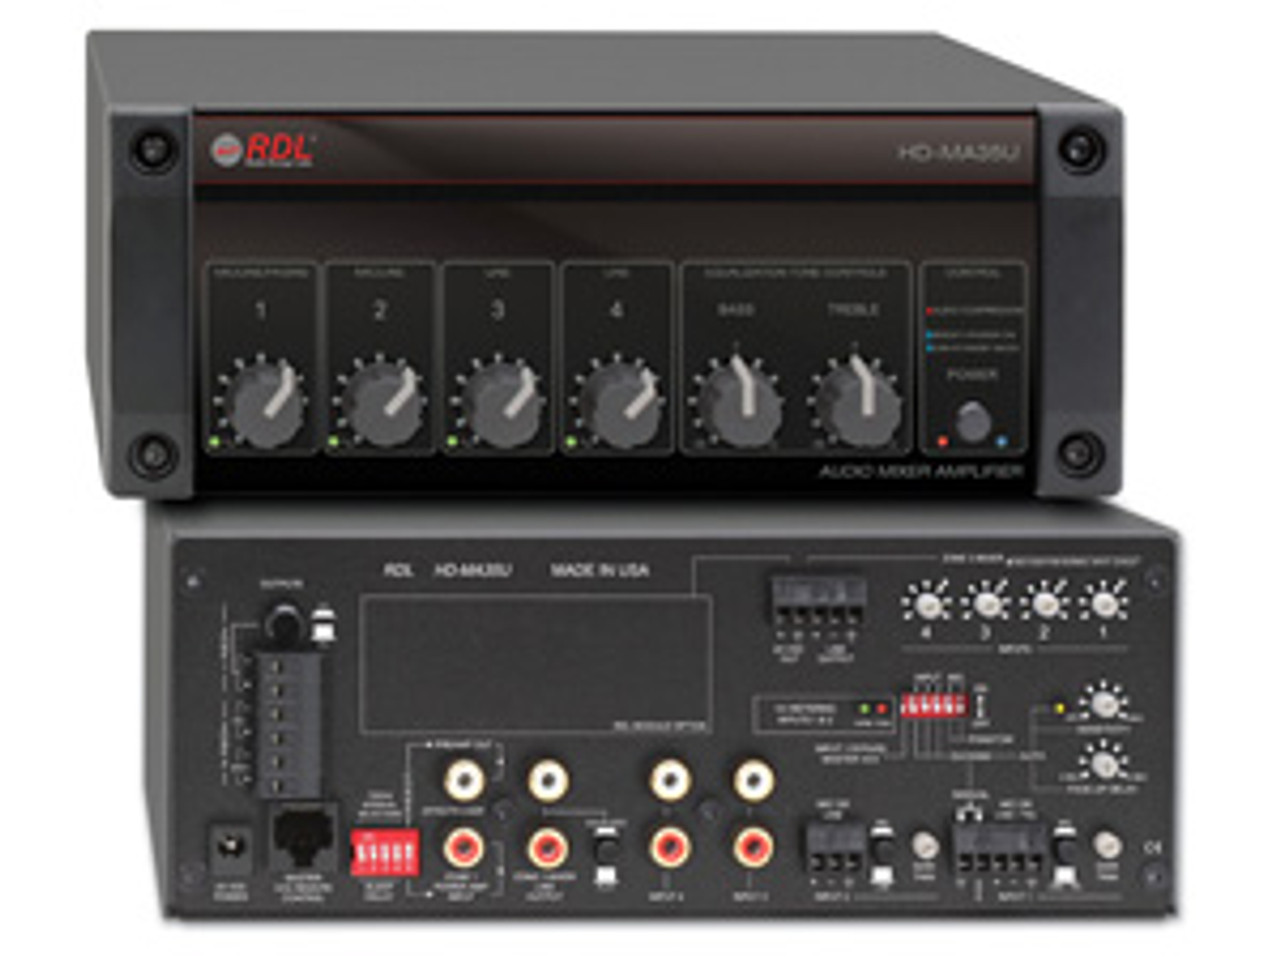 RDL HD-MA35U 35-Watt Mixer Amplifier (HD-MA35U)